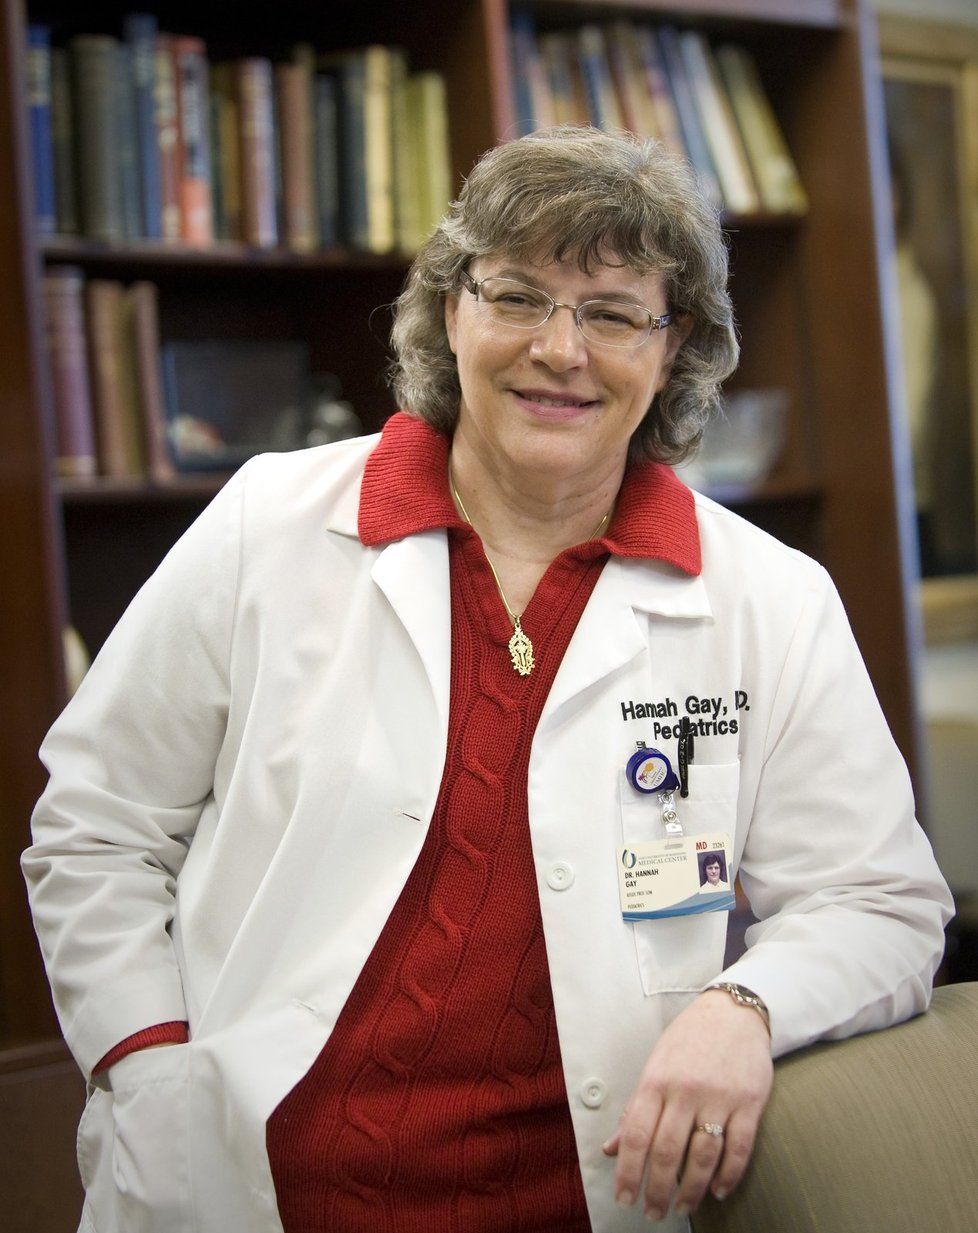 Dr. Hannah Gay je pediatričkou specializující se na malé pacienty s HIV